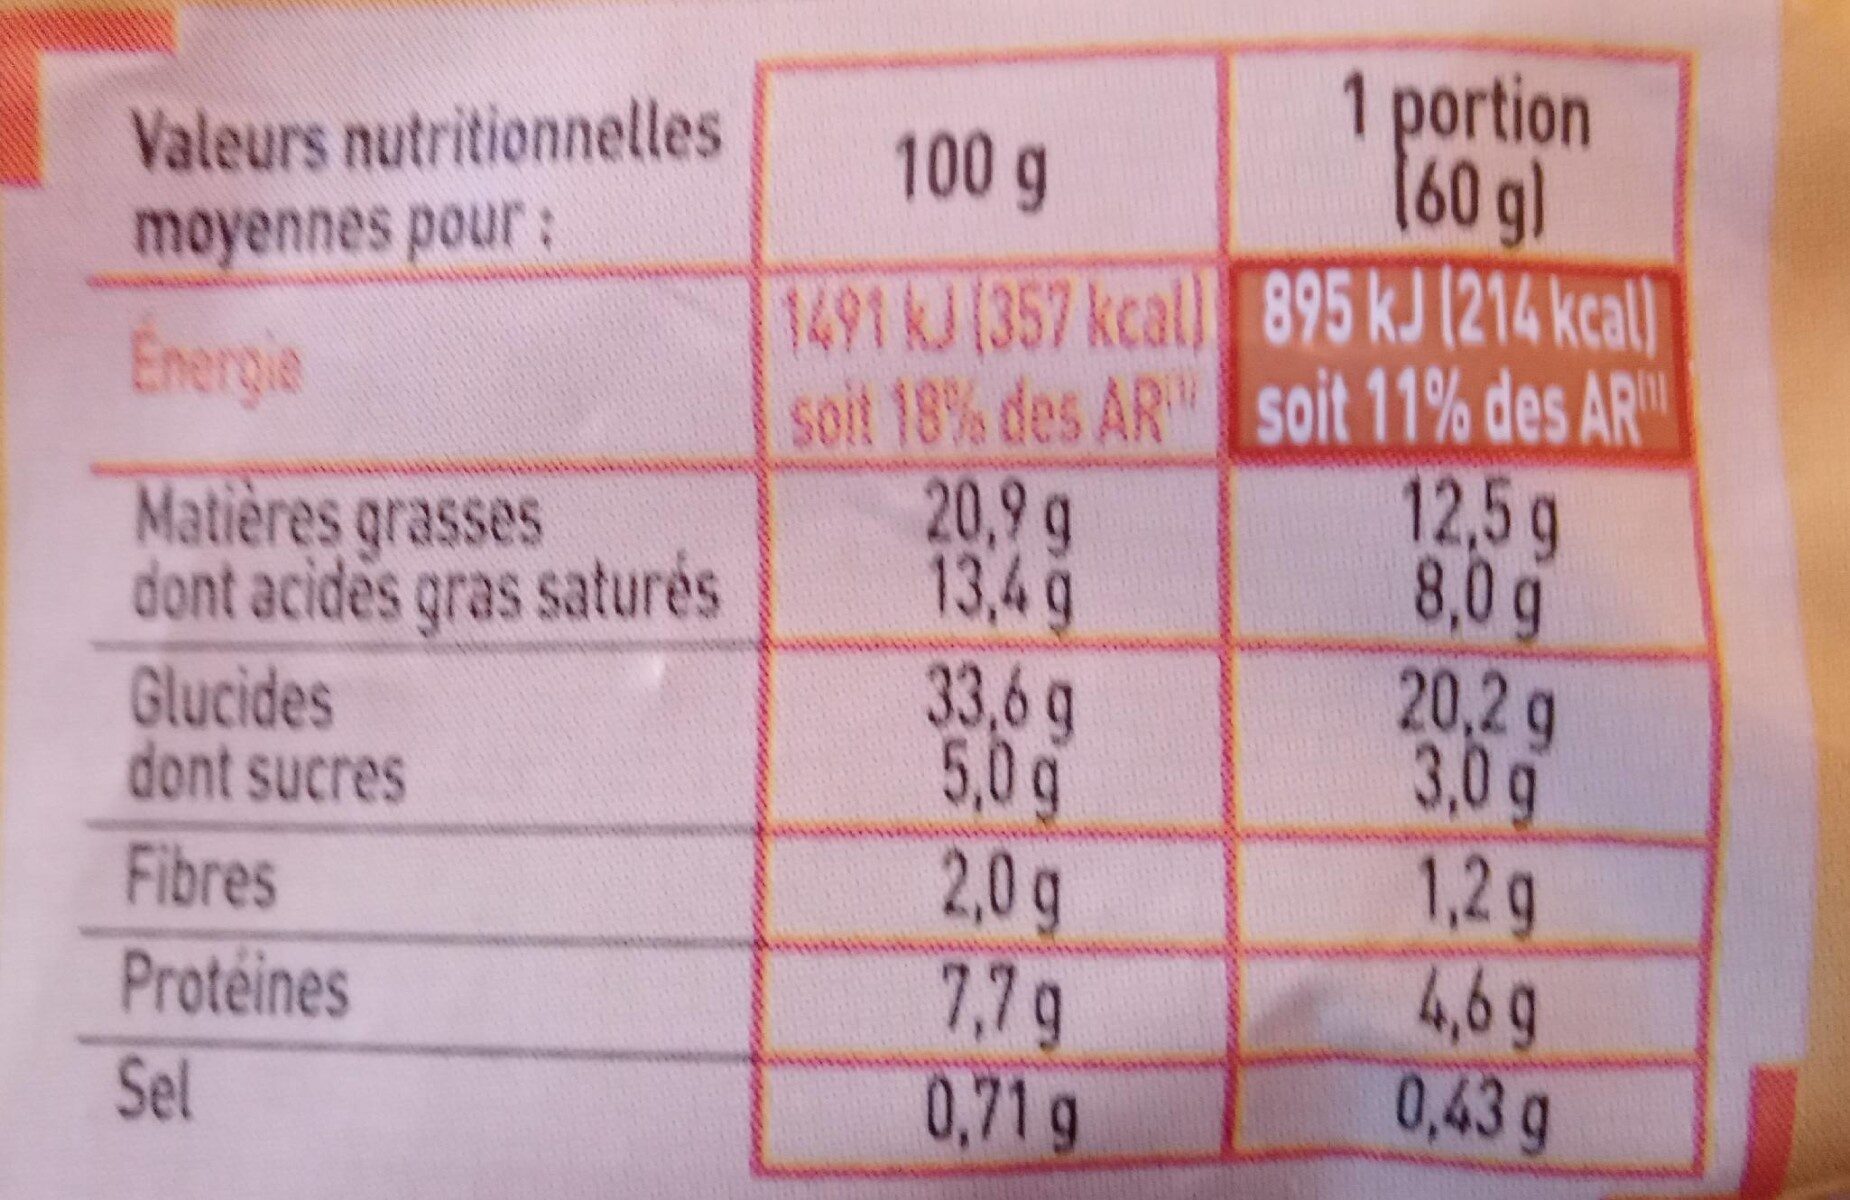 8 croissants pur beurre prêt a cuire - Nutrition facts - fr